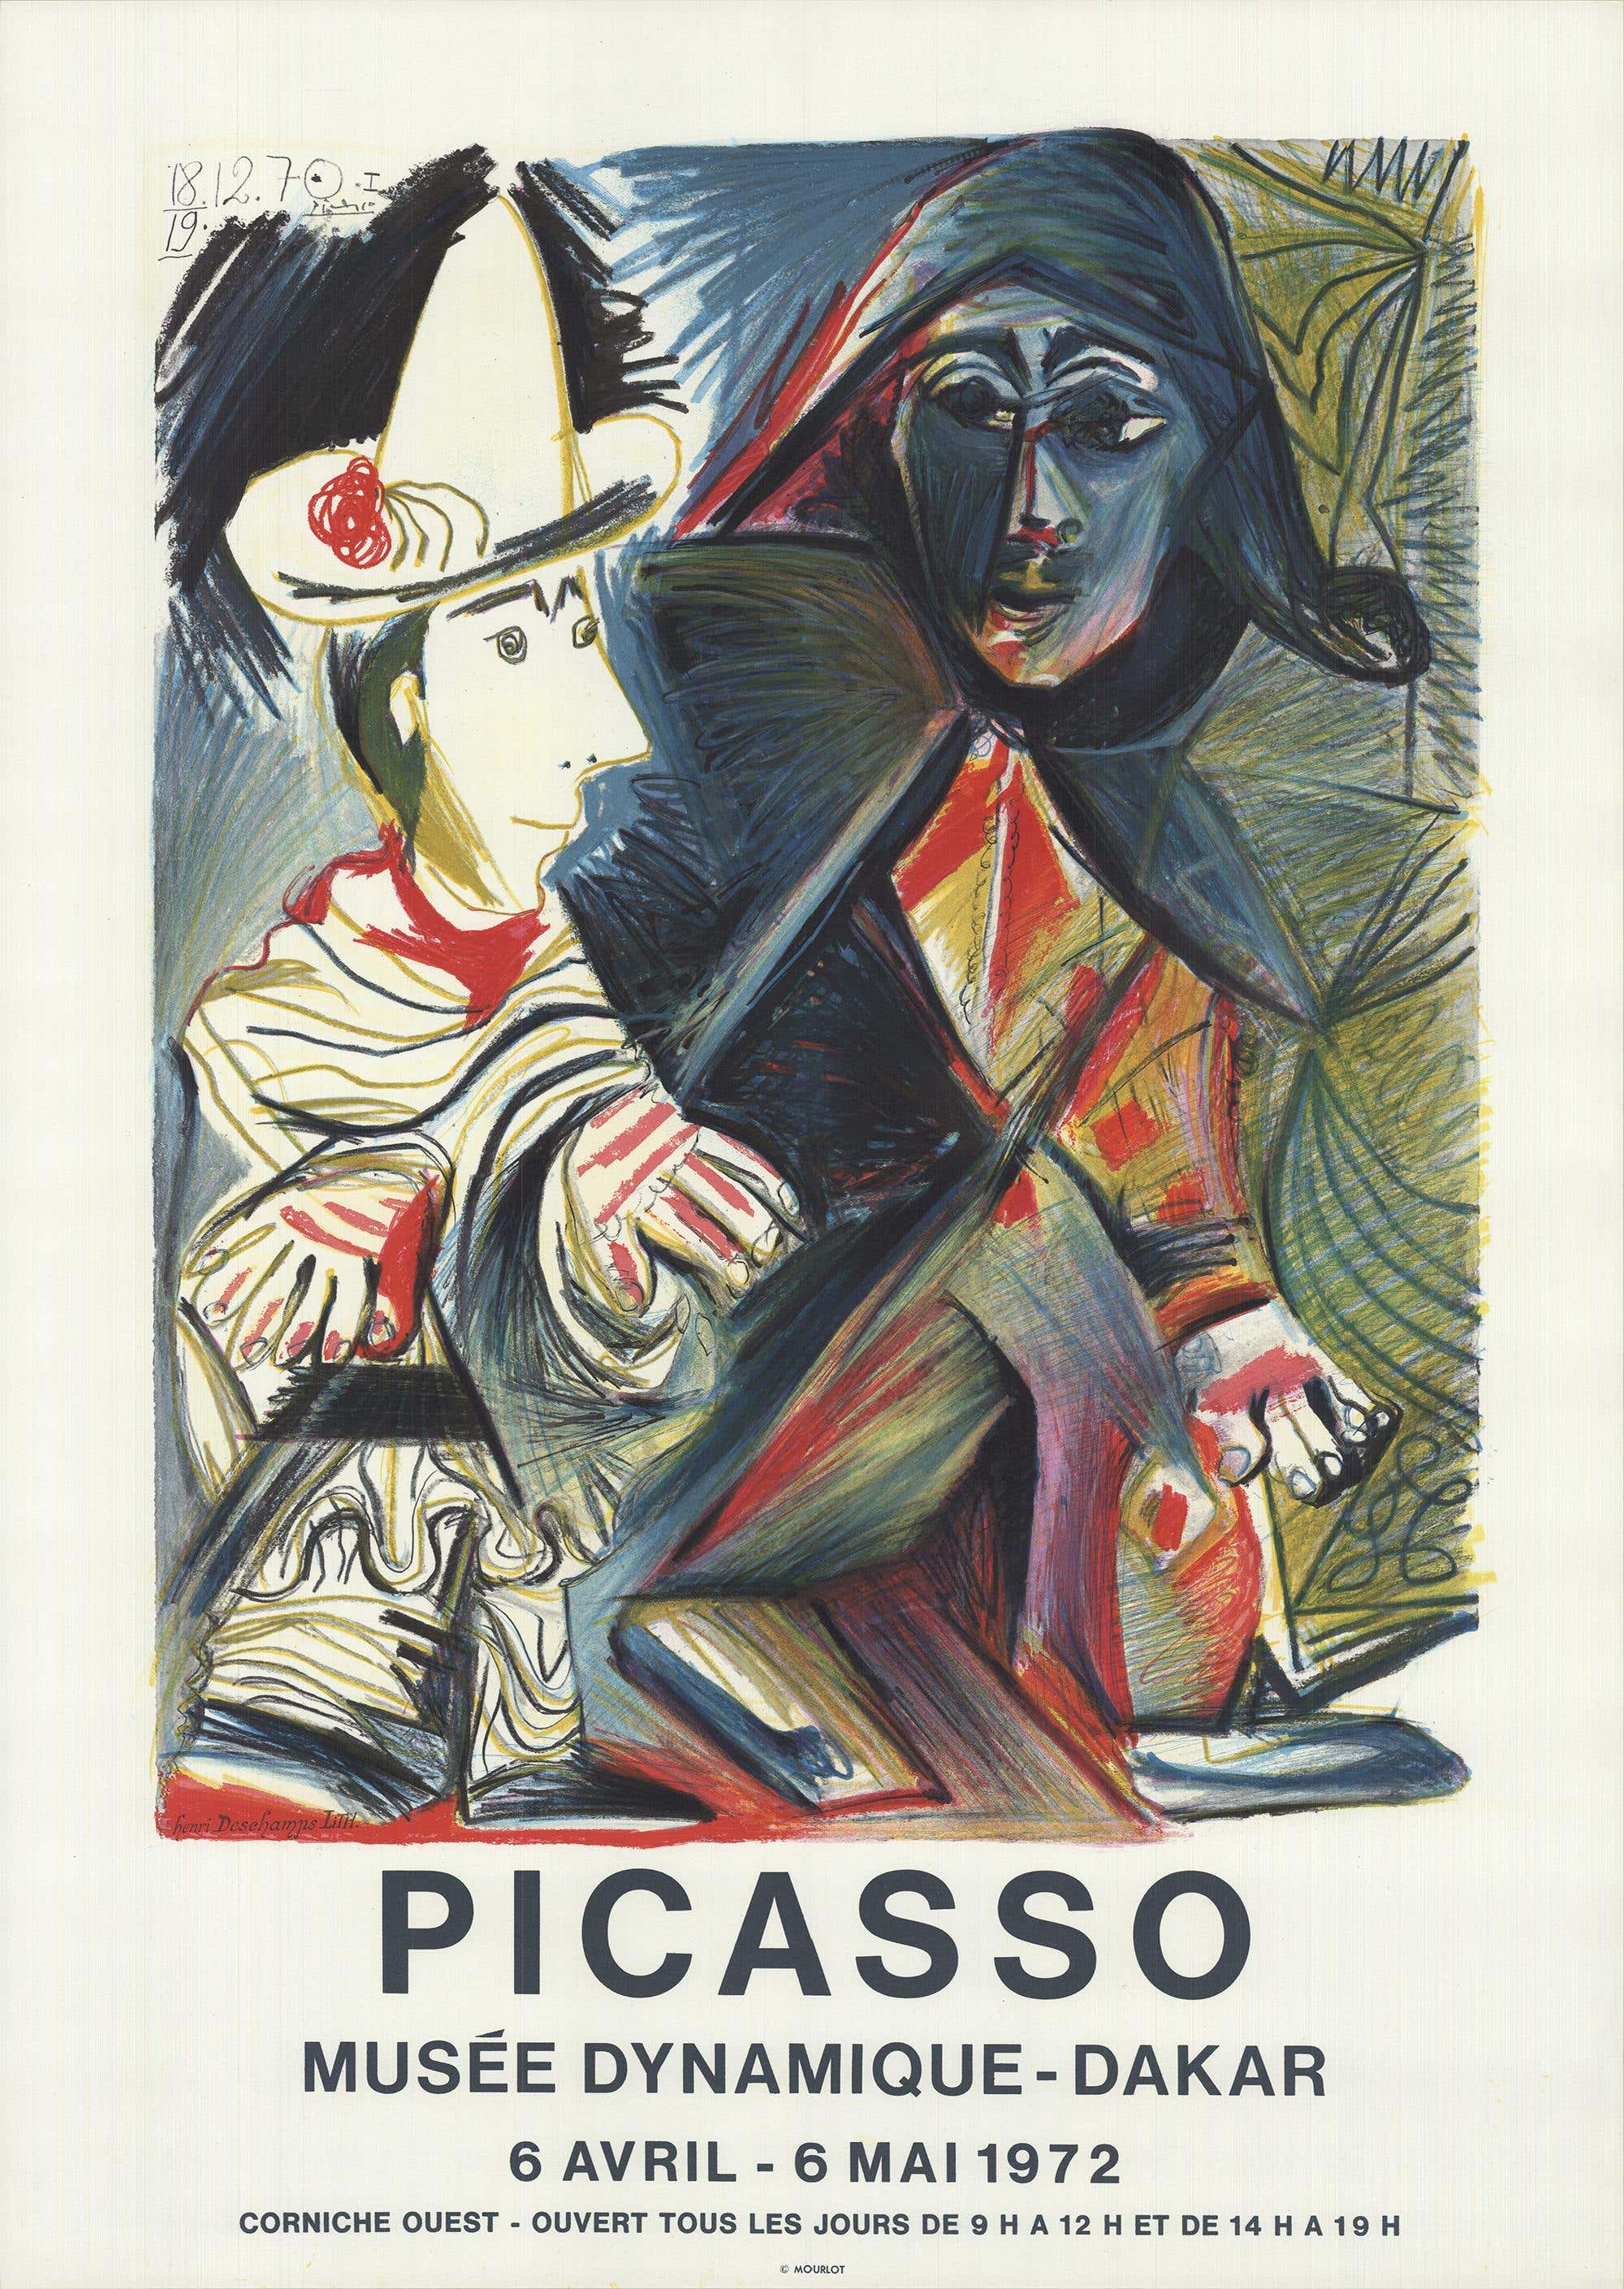 Lithographie originale de Pablo Picasso, Dakar, 1972